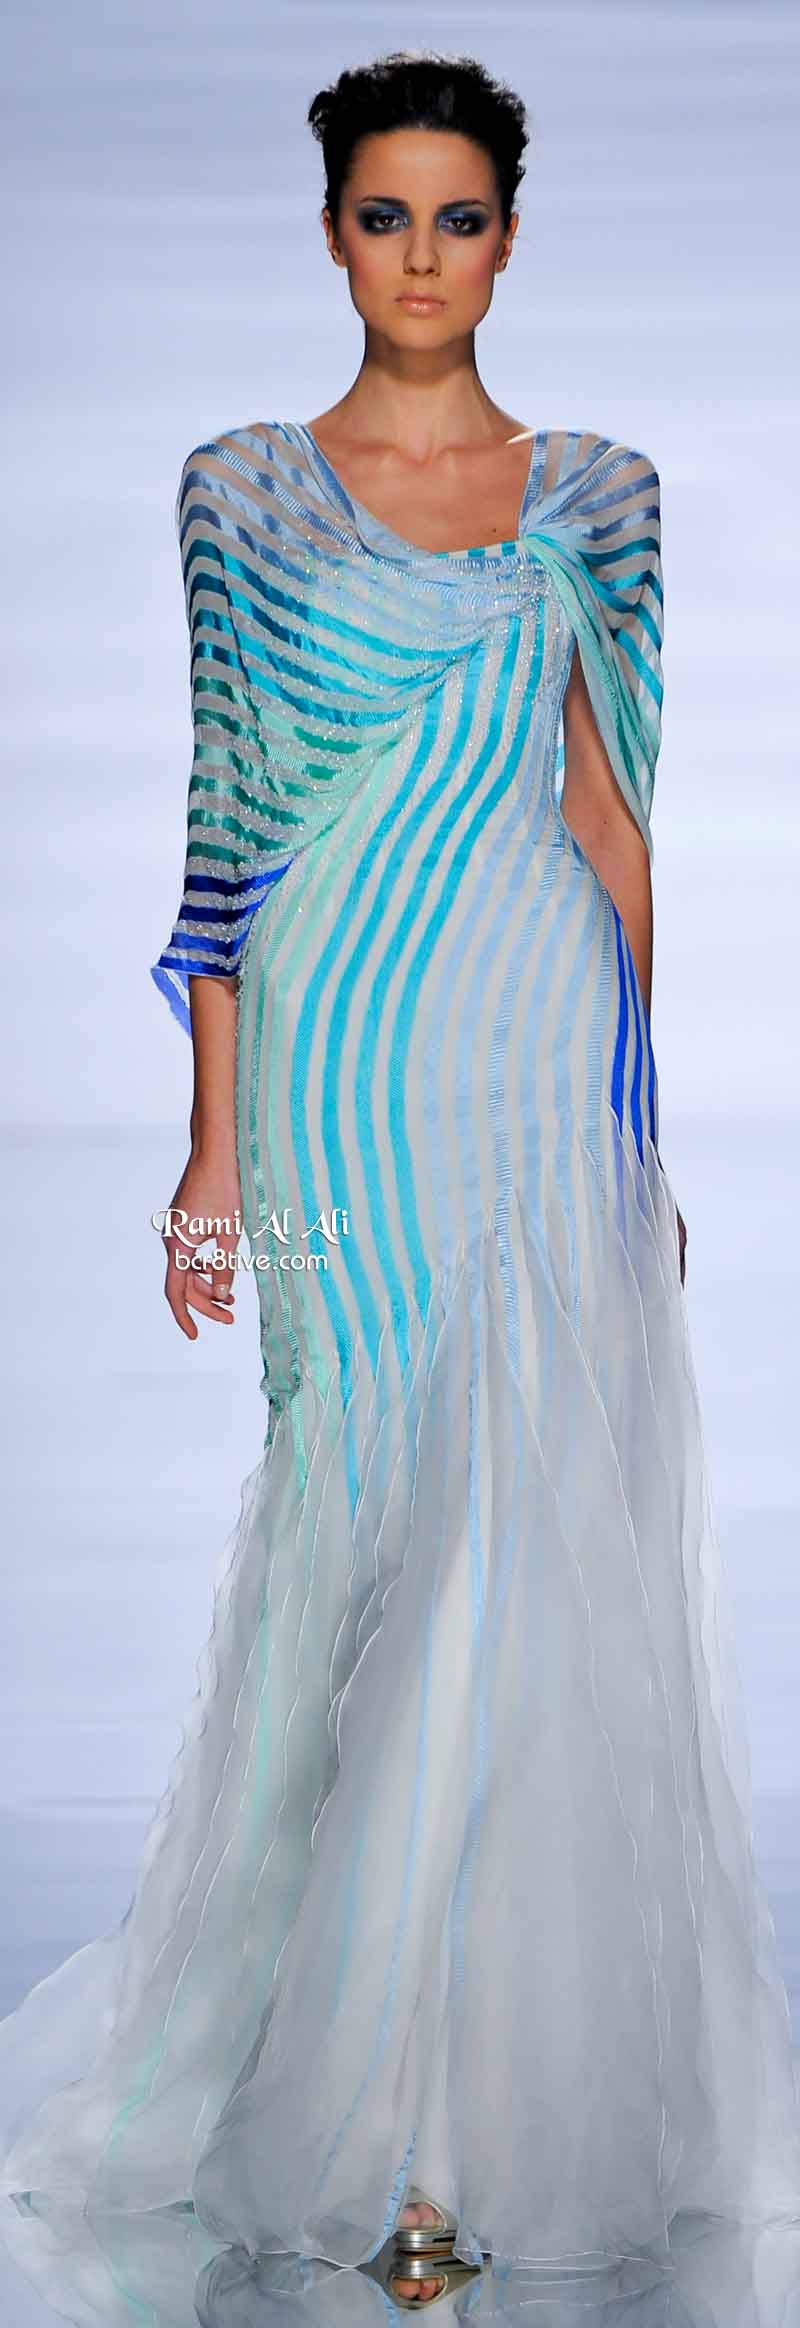 Rami Al Ali Spring 2011 Couture